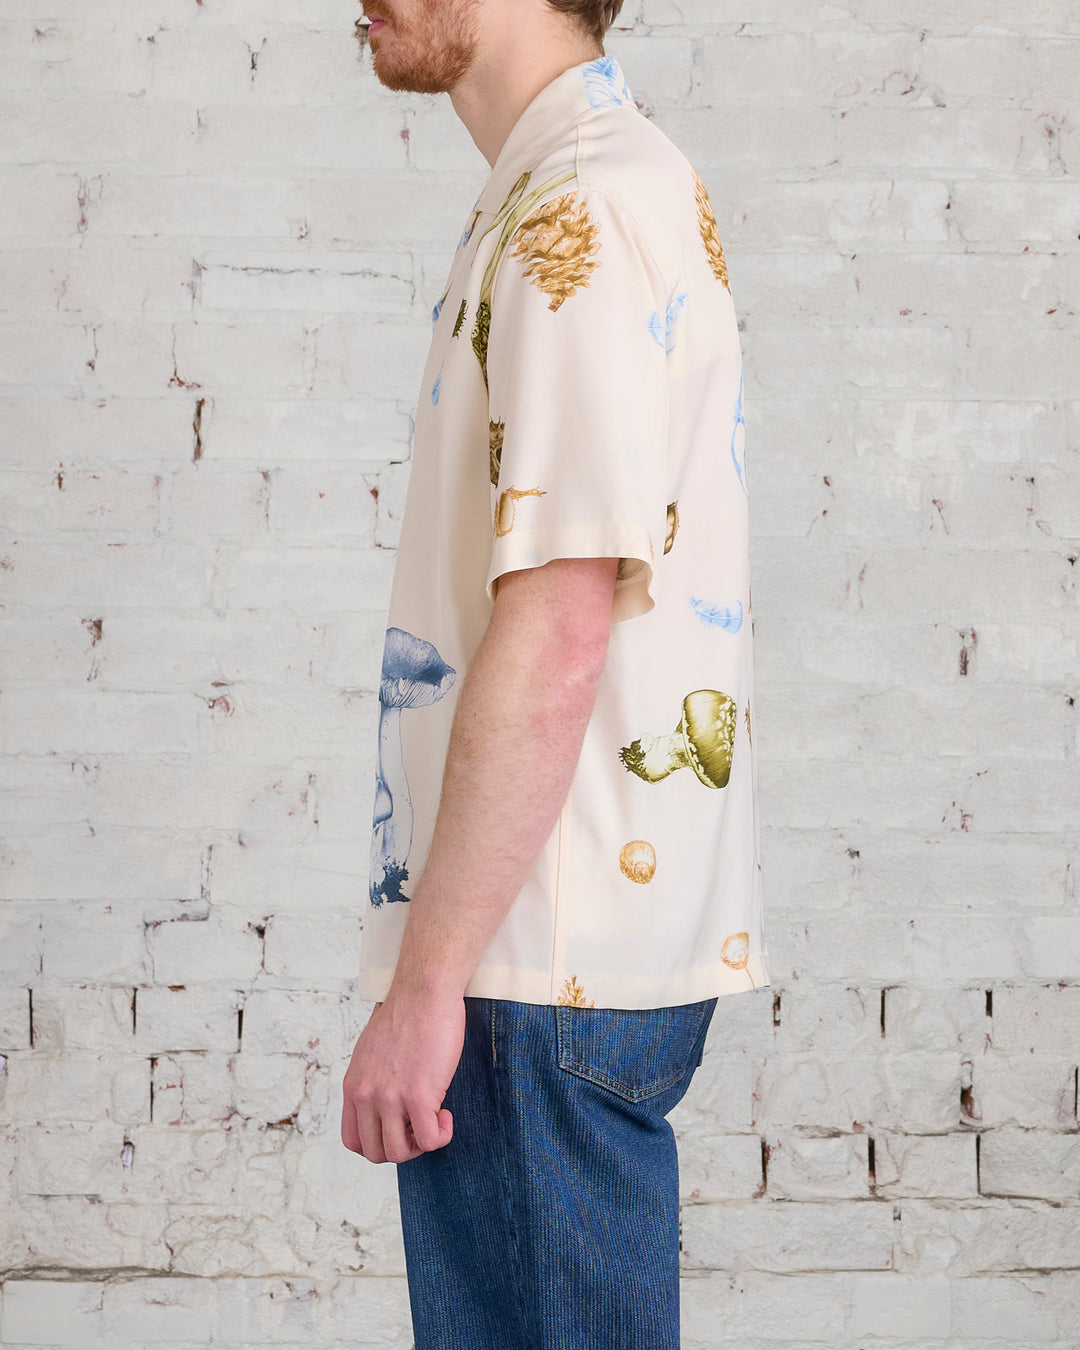 Jil Sander+ Fluid Viscose Forest Short Sleeve Button Shirt